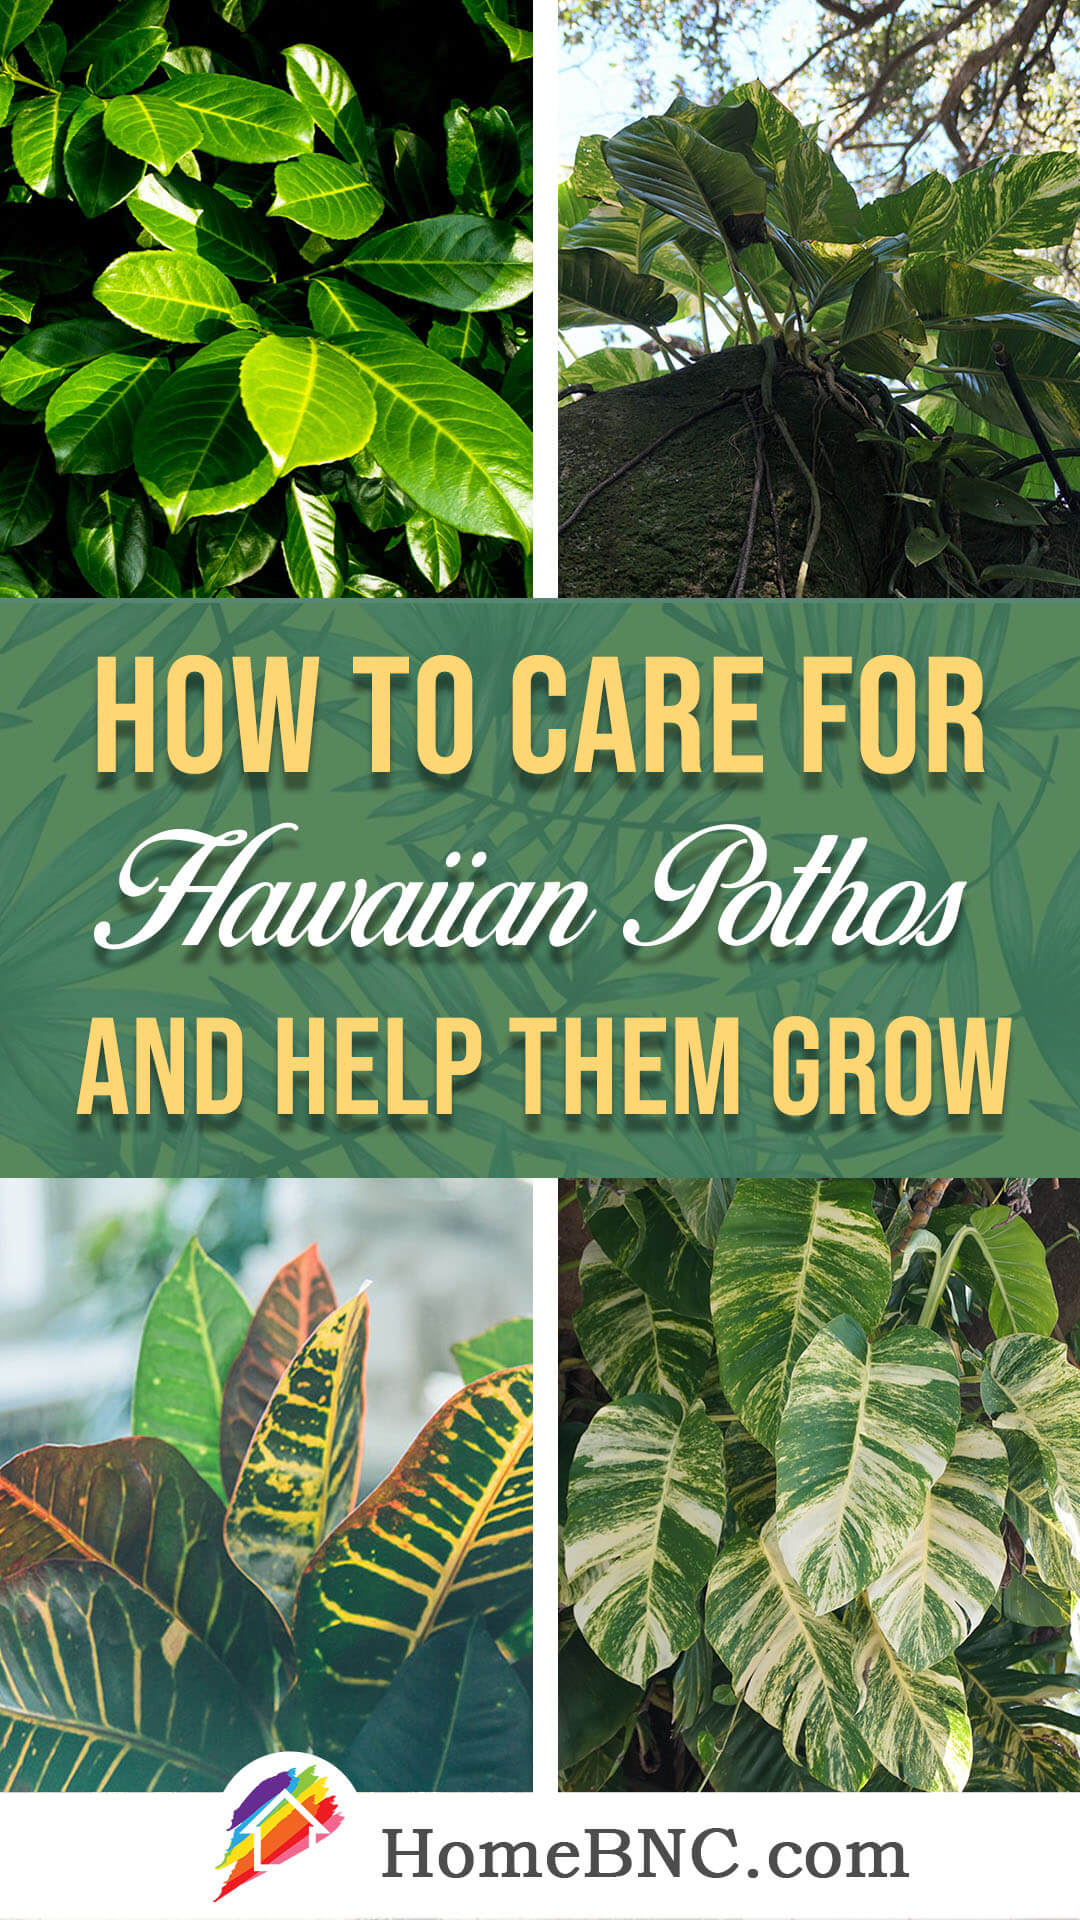 Hawaiian Pothos Care